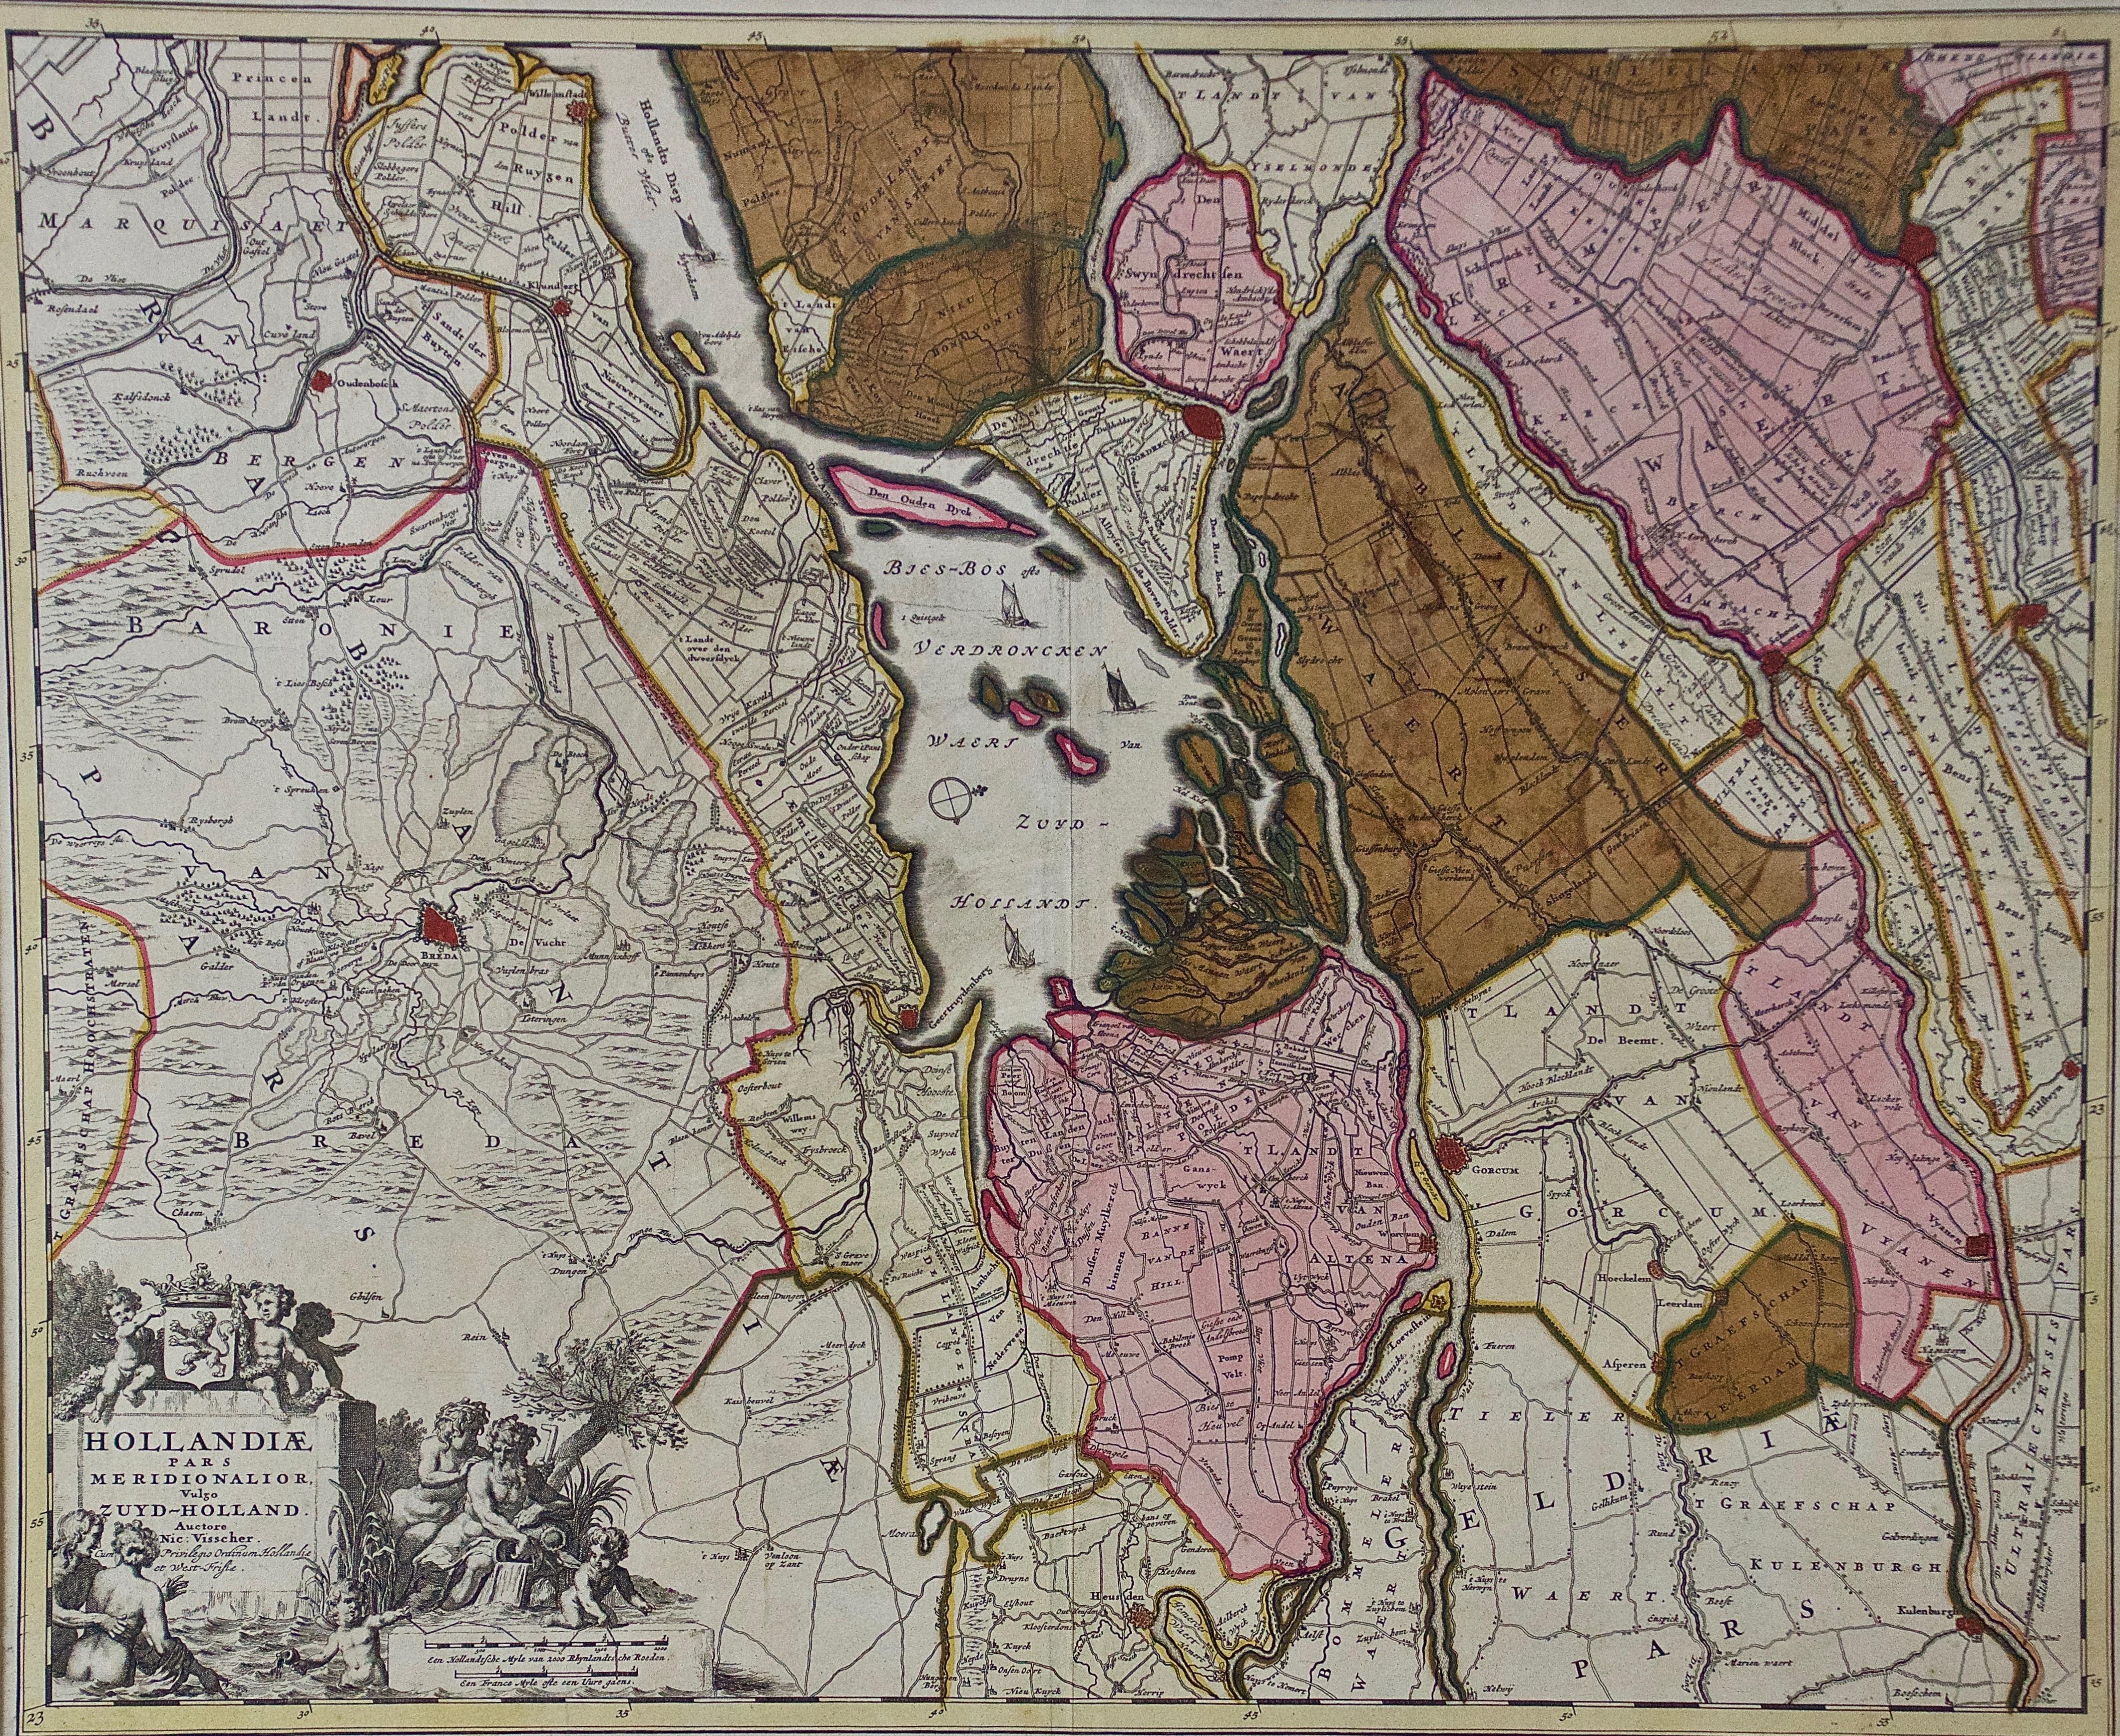 Southern Holland: An Original 17th C. Hand-colored Visscher Map 